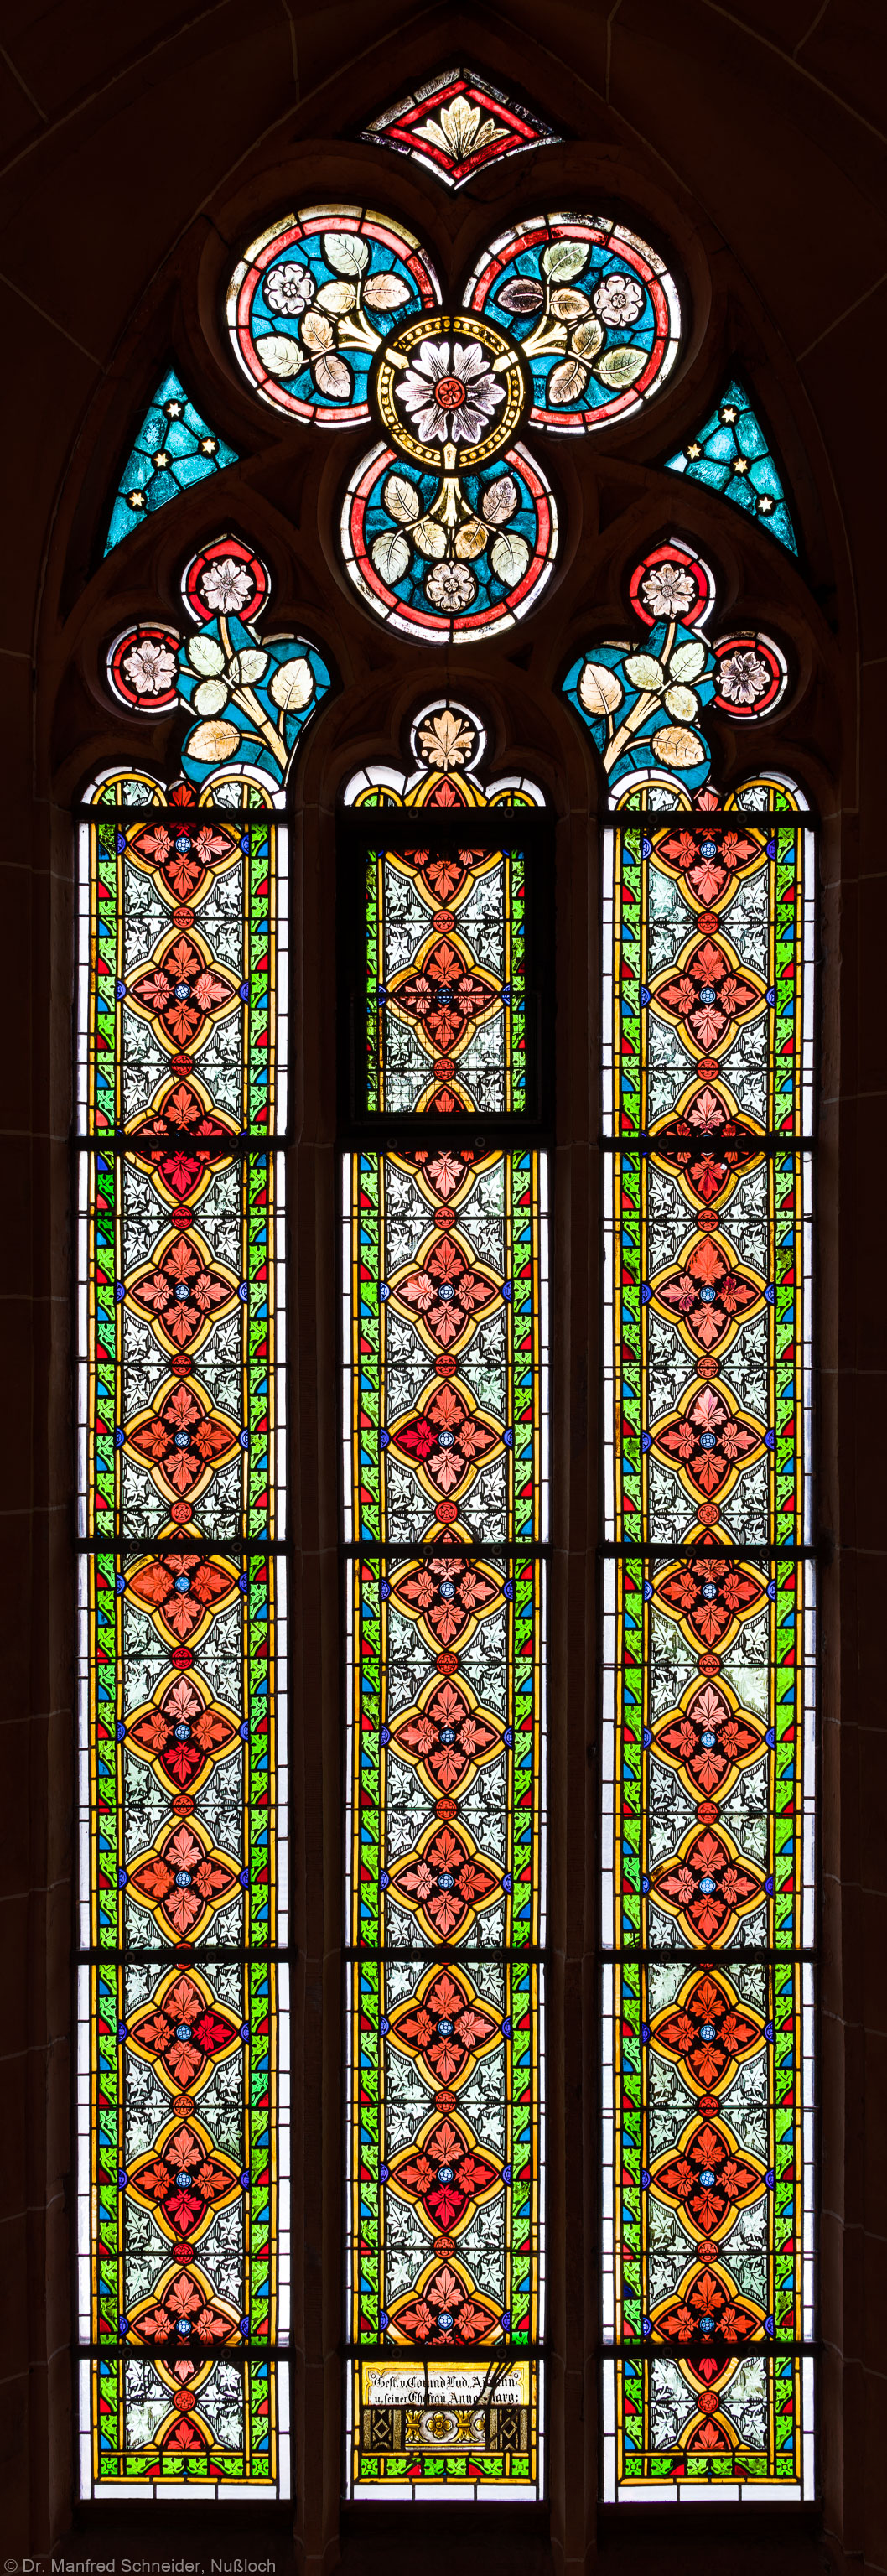 Heidelberg - Heiliggeistkirche - Südschiff - 2. Joch, von Westen aus gezählt - Gesamtaufnahme des Ornamentfensters (aufgenommen im Oktober 2015, am Nachmittag)